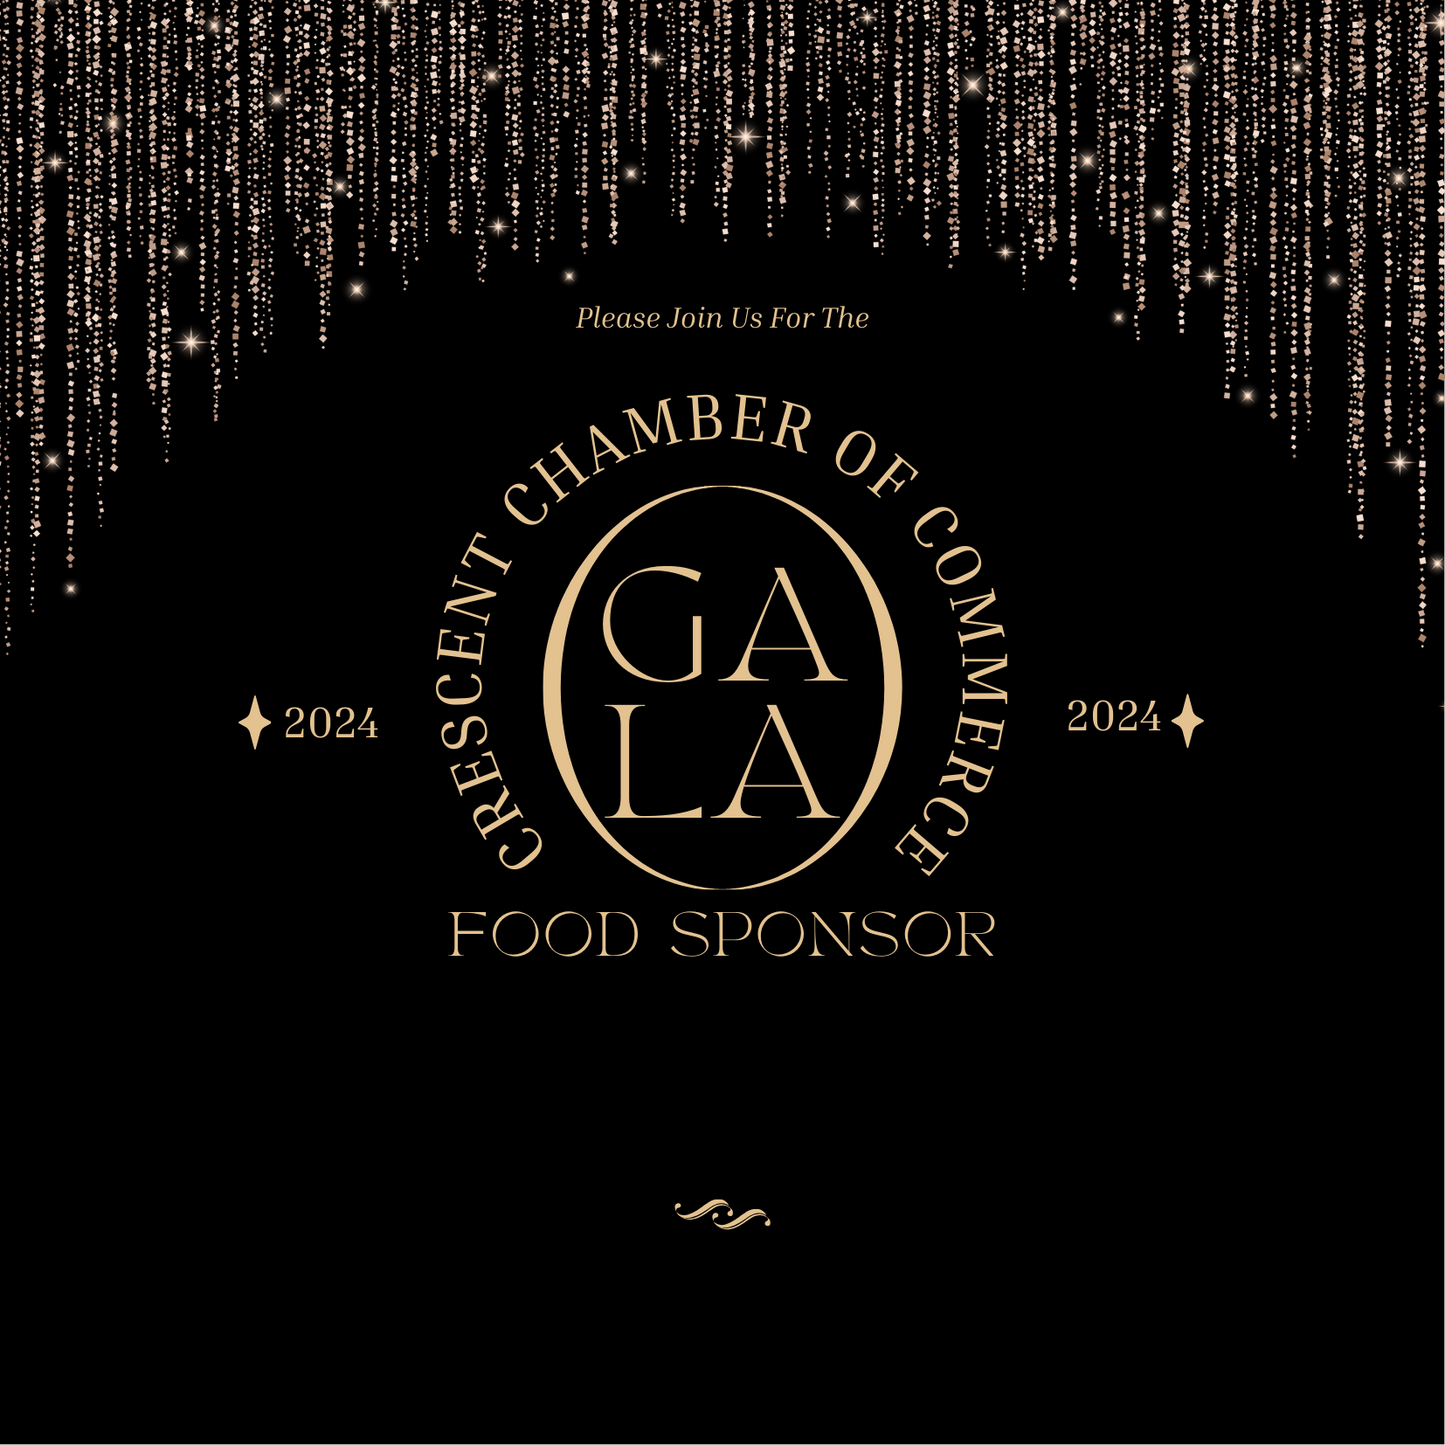 Chamber Gala Food Sponsor